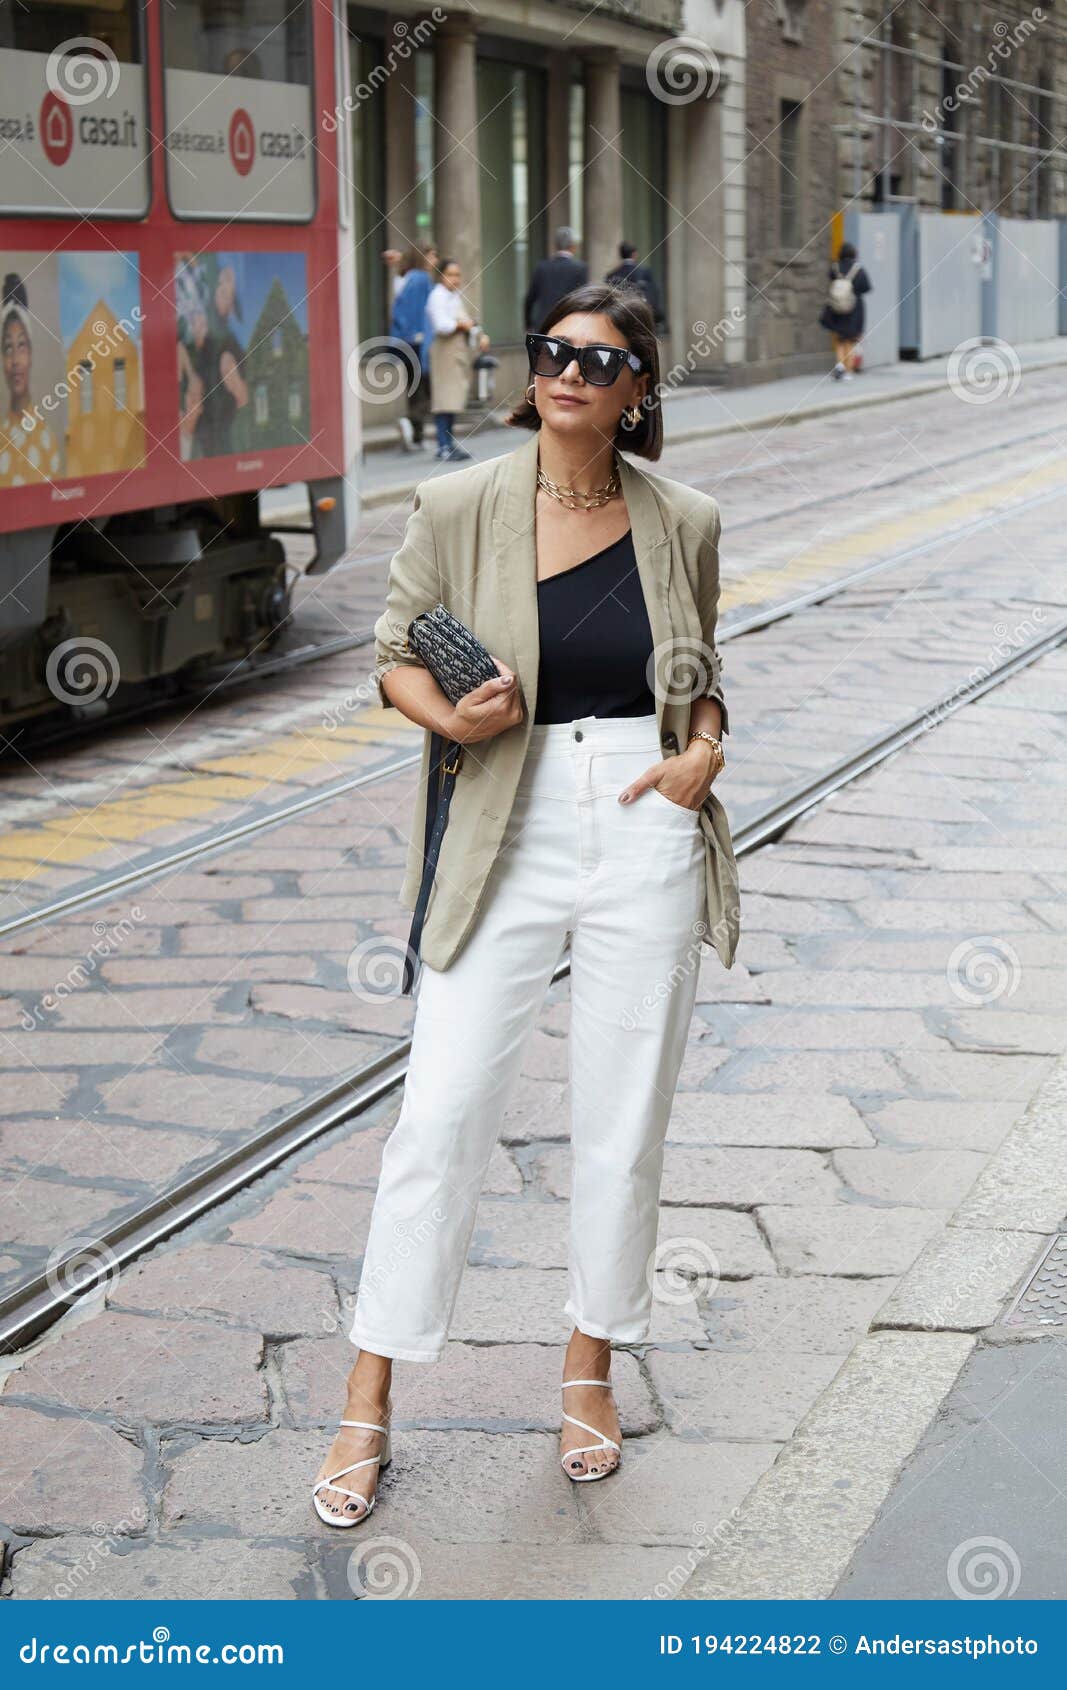 Femme Aux Pantalon Blanc Et Une Veste Beige Avant Semaine De Mode De Milan  Fashion Show De Calcaterra Photographie éditorial - Image du extérieur,  équipement: 194224822